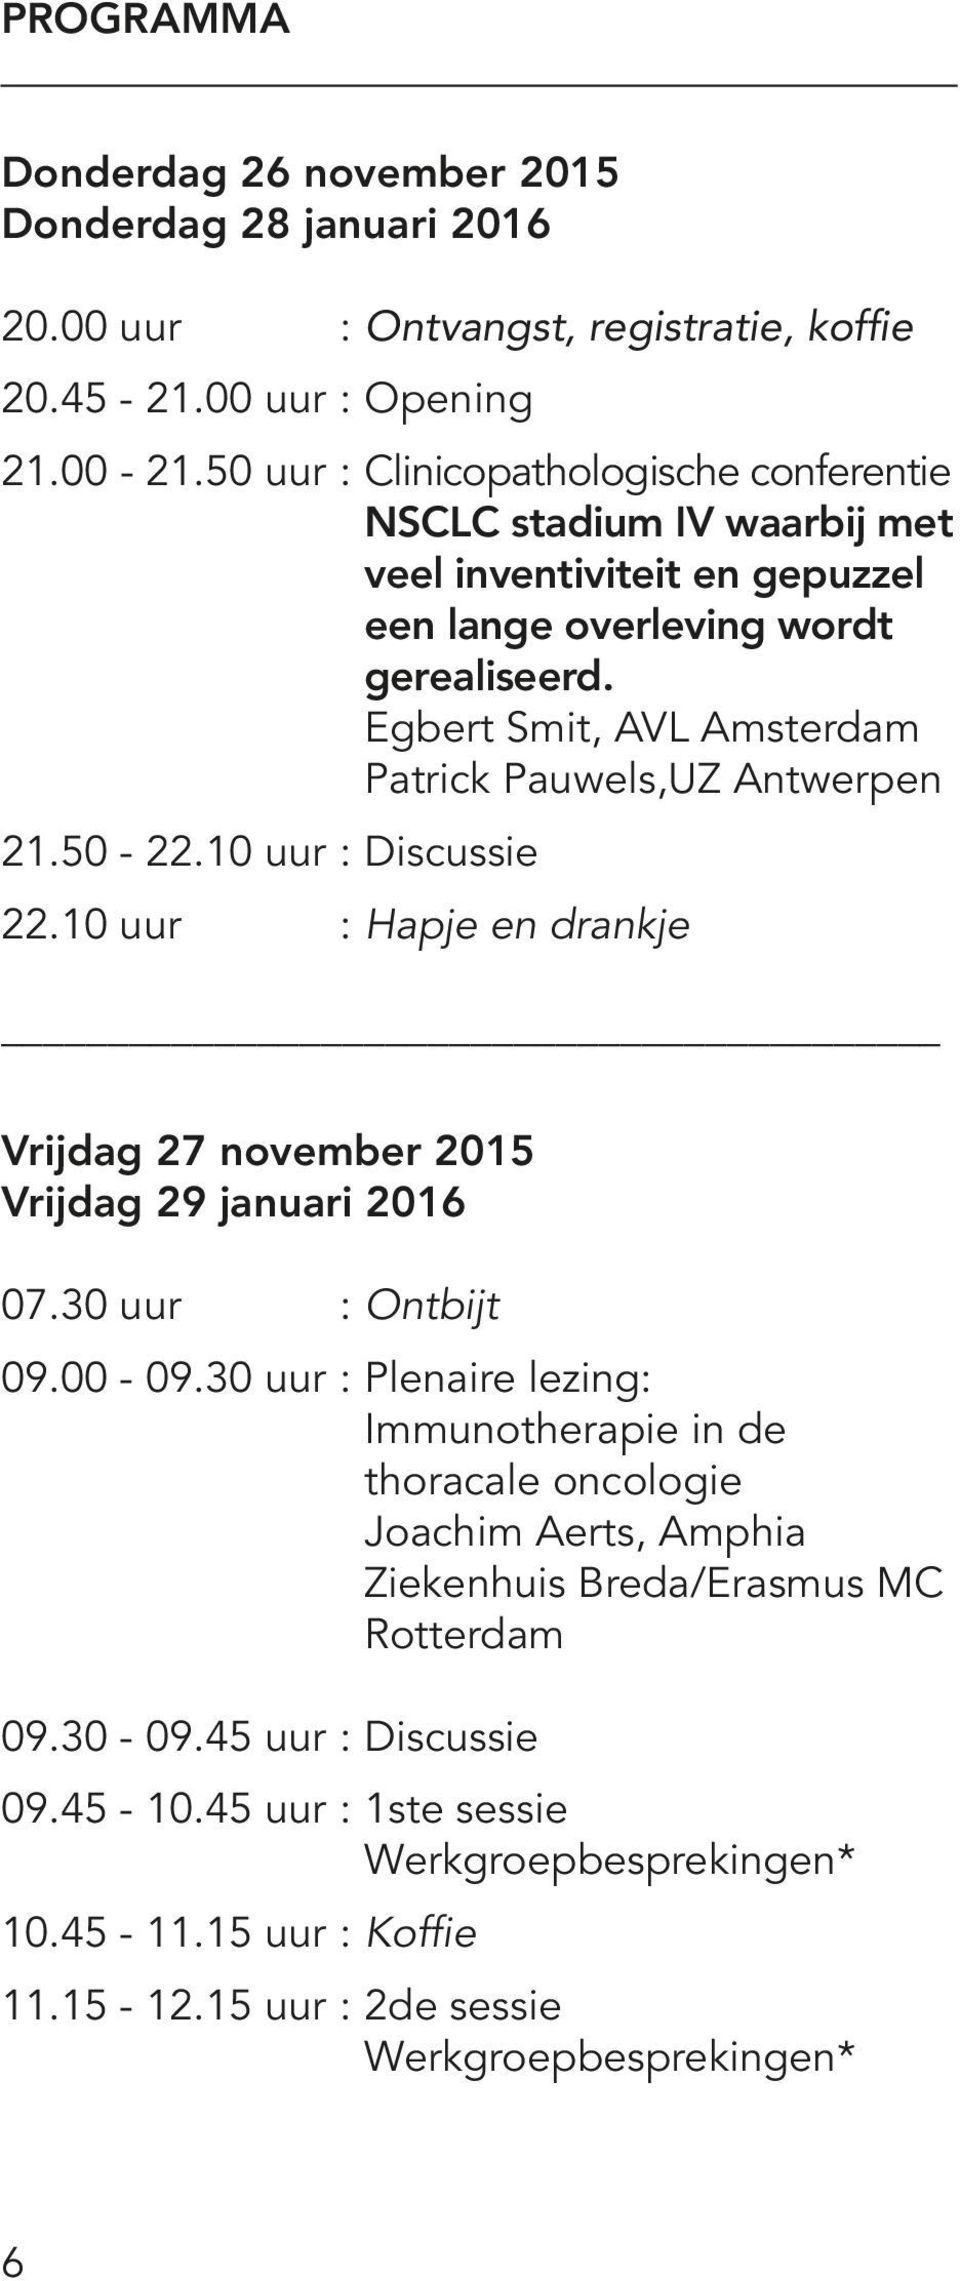 Egbert Smit, AVL Amsterdam Patrick Pauwels,UZ Antwerpen 21.50-22.10 uur : Discussie 22.10 uur : Hapje en drankje Vrijdag 27 november 2015 Vrijdag 29 januari 2016 07.30 uur : Ontbijt 09.00-09.